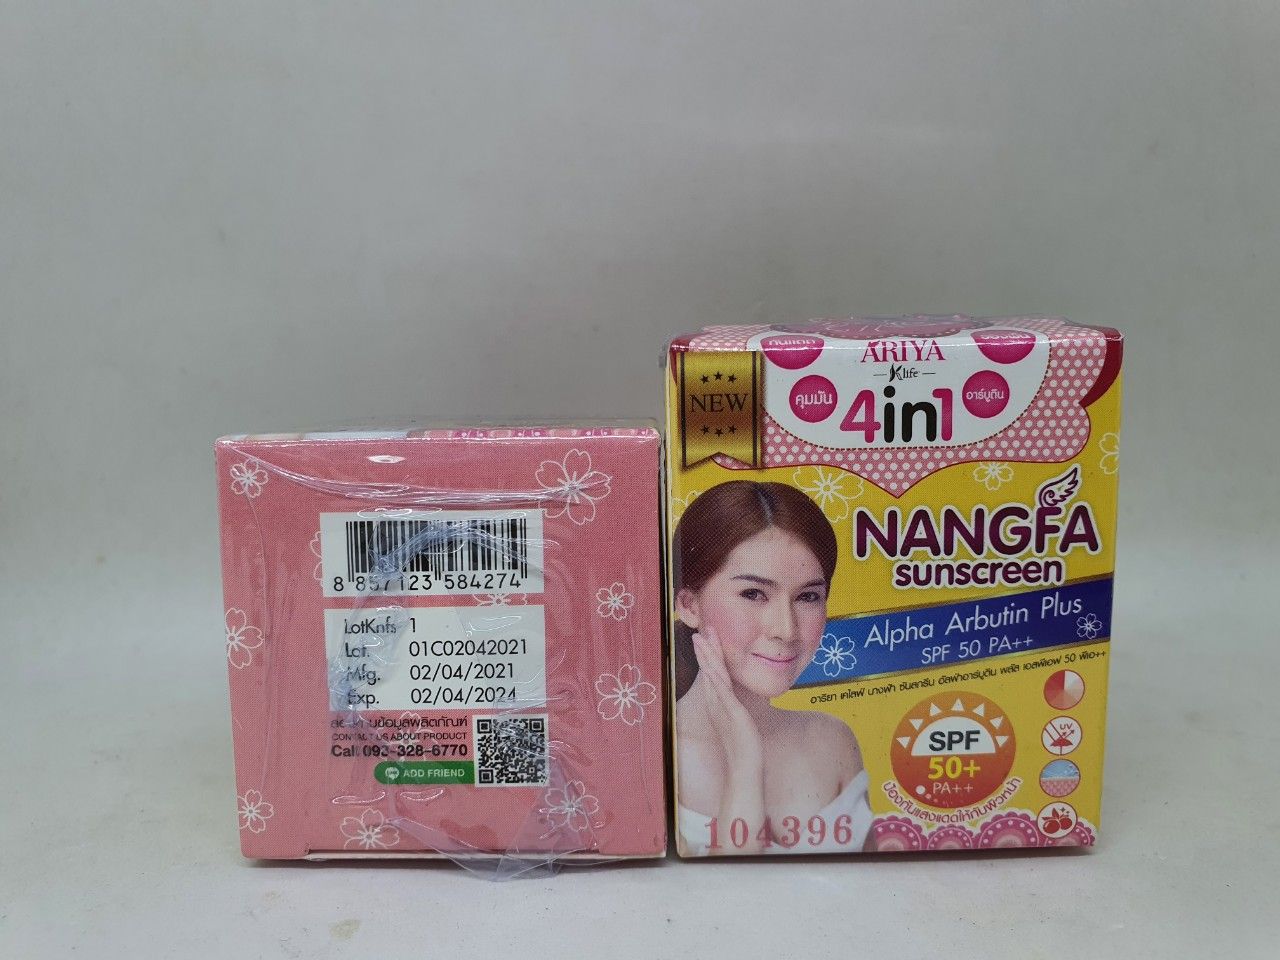  Kem chống nắng nanfa sunscreen 4 in 1 dưỡng da trị mụn hàng nội địa chính hãng thái lan 5g 